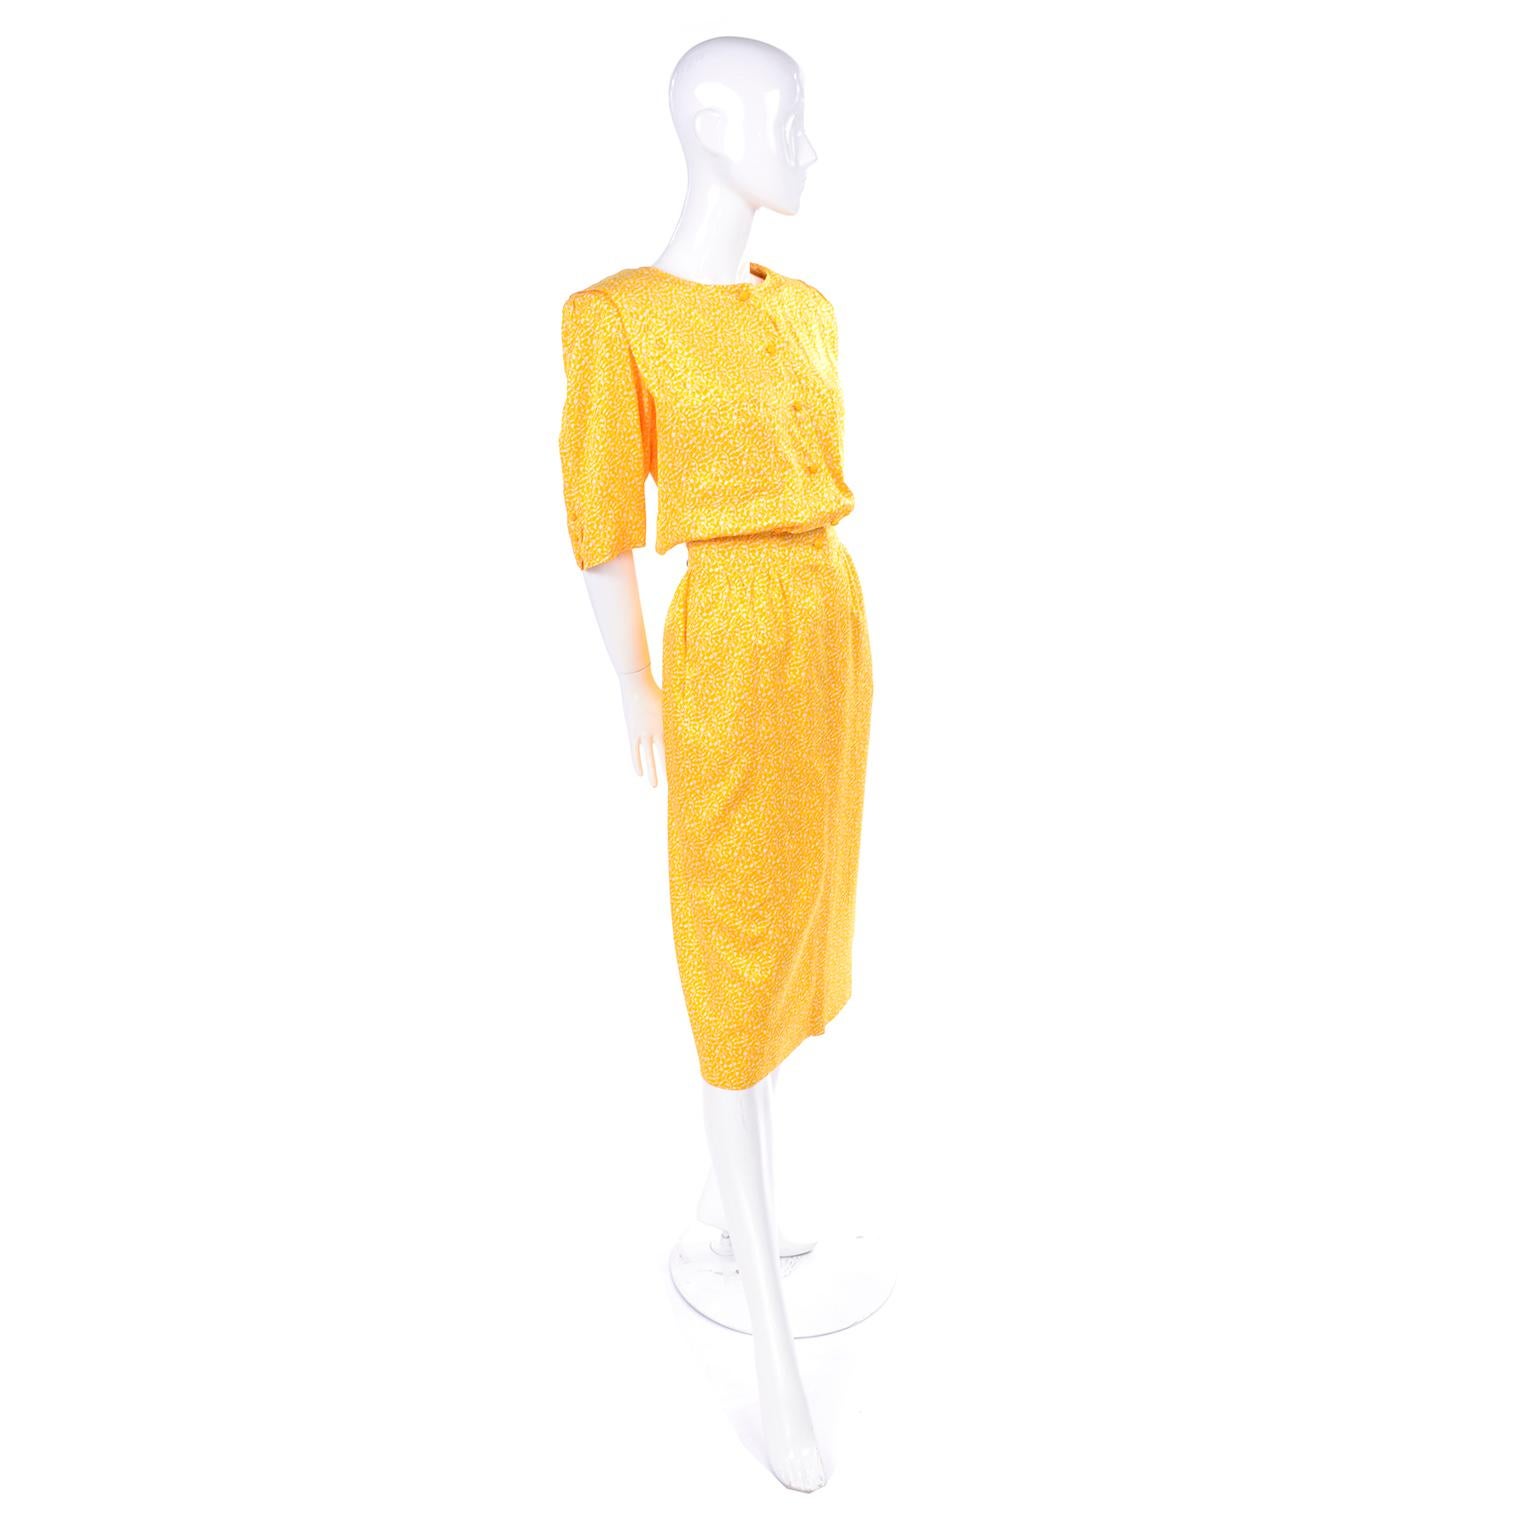 Dies ist ein sehr hübsches gelb-weißes Viskosekleid von Ungaro.  Das Kleid trägt das Label Emanuel Ungaro Parallele Paris, zwei Brusttaschen und zwei seitliche Gesäßtaschen mit Schlitz. Es hat Schulterpolster mit Falten über den Schultern. Die Ärmel